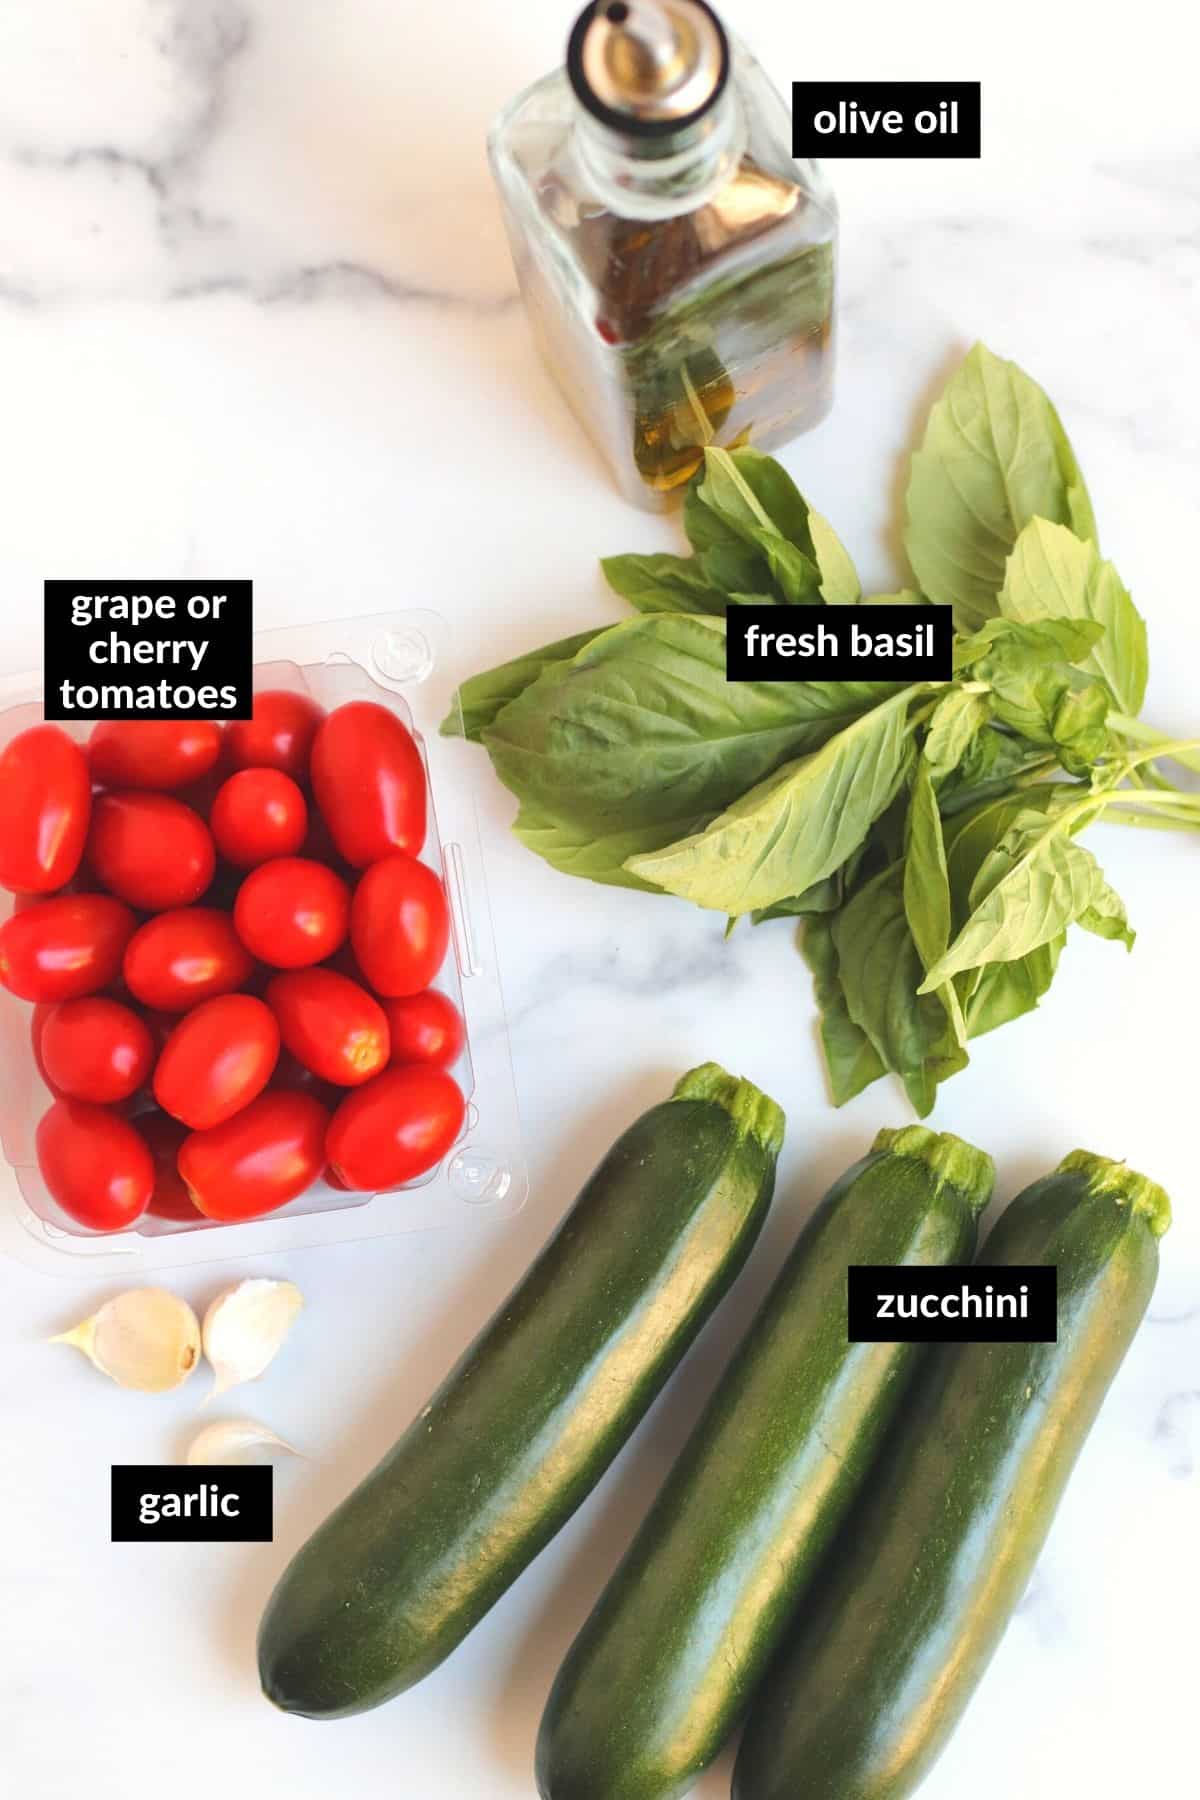 Imagen que muestra los ingredientes etiquetados para la receta (aceite de oliva, uva o tomates cherry, albahaca fresca, calabacín y dientes de ajo)